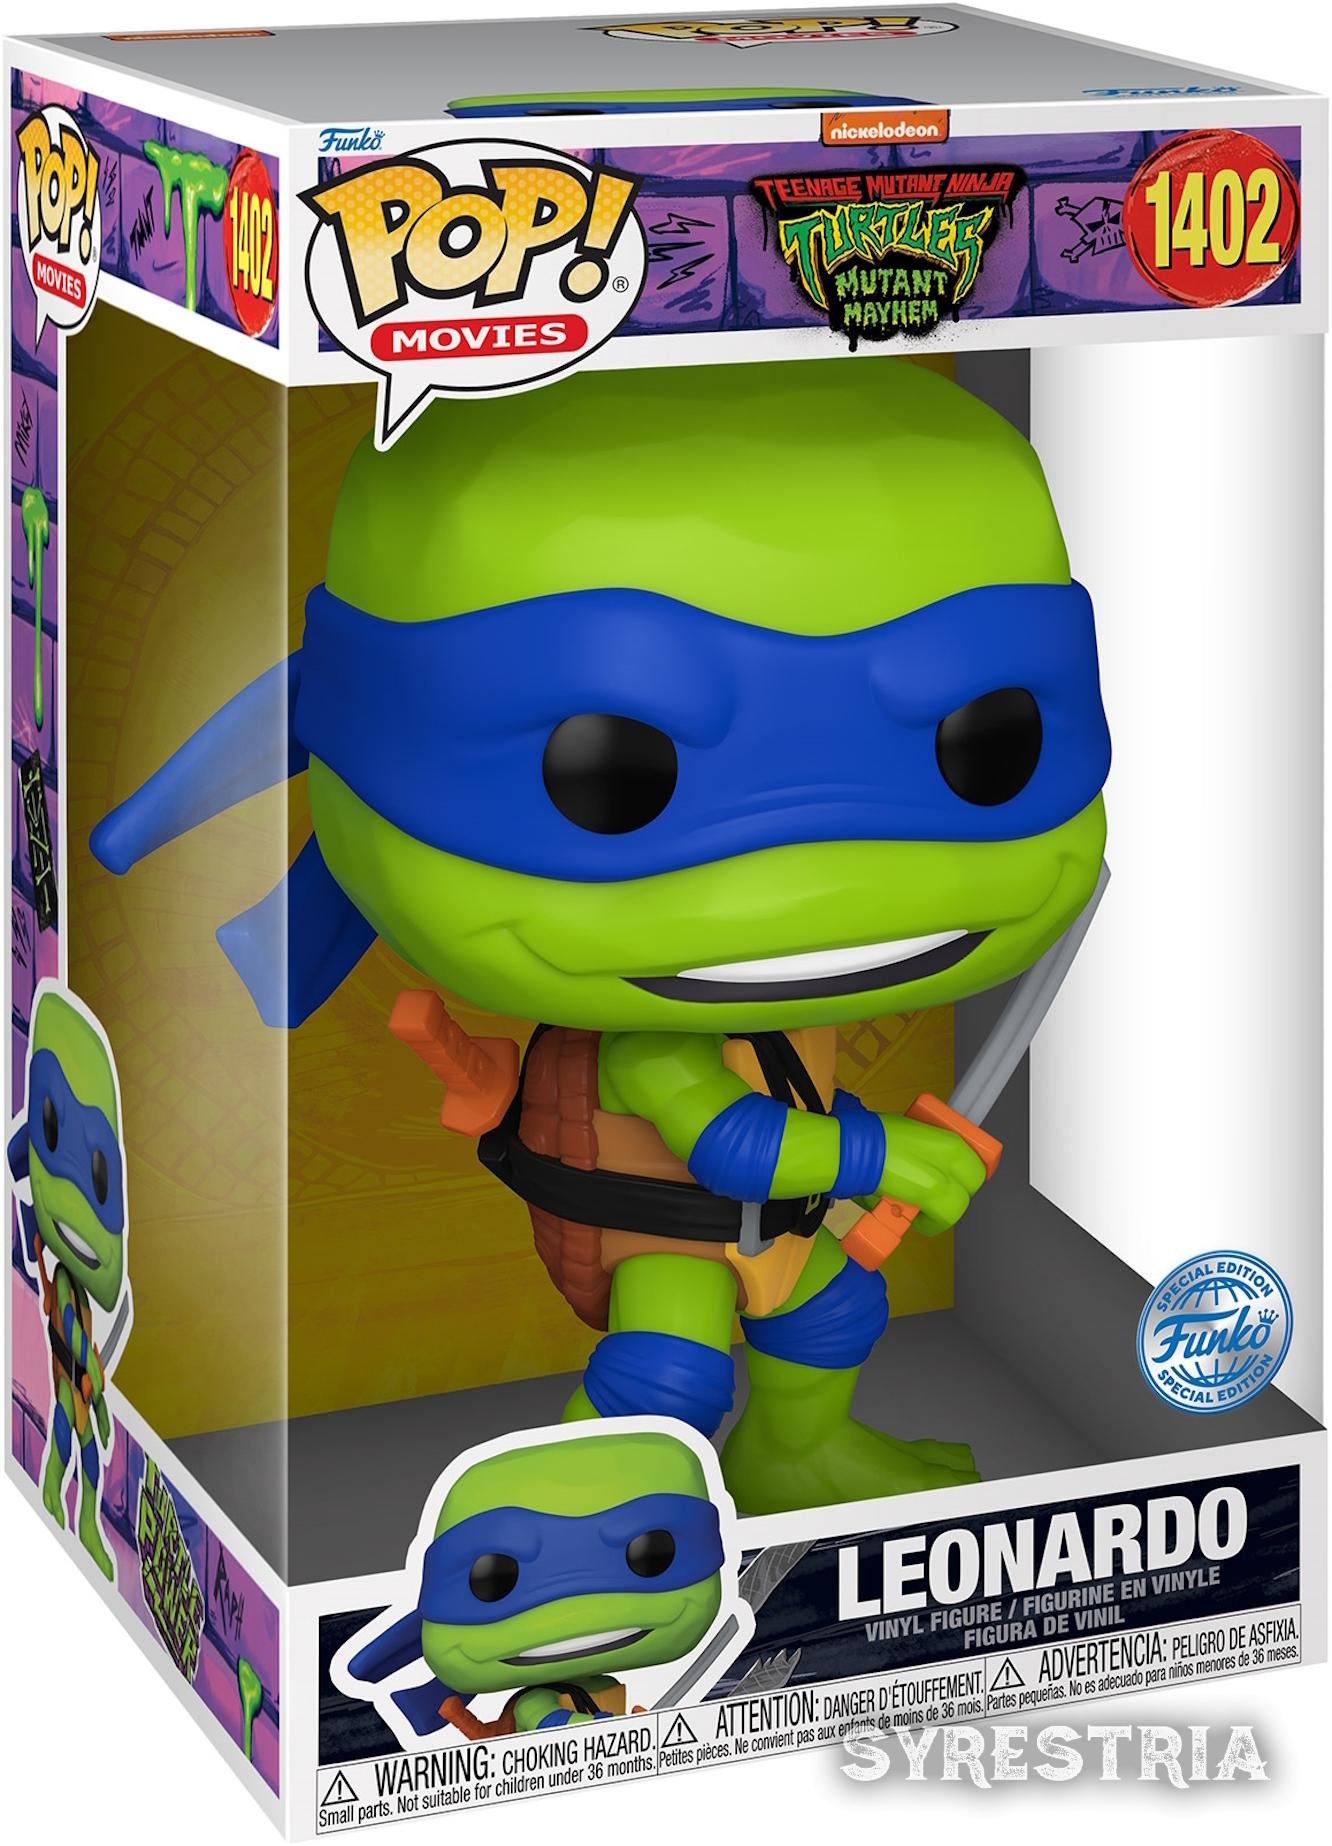 Teenage Mutant Ninja Turtles - Leonardo 1402  Special Edtion - Funko Pop! Vinyl Figur